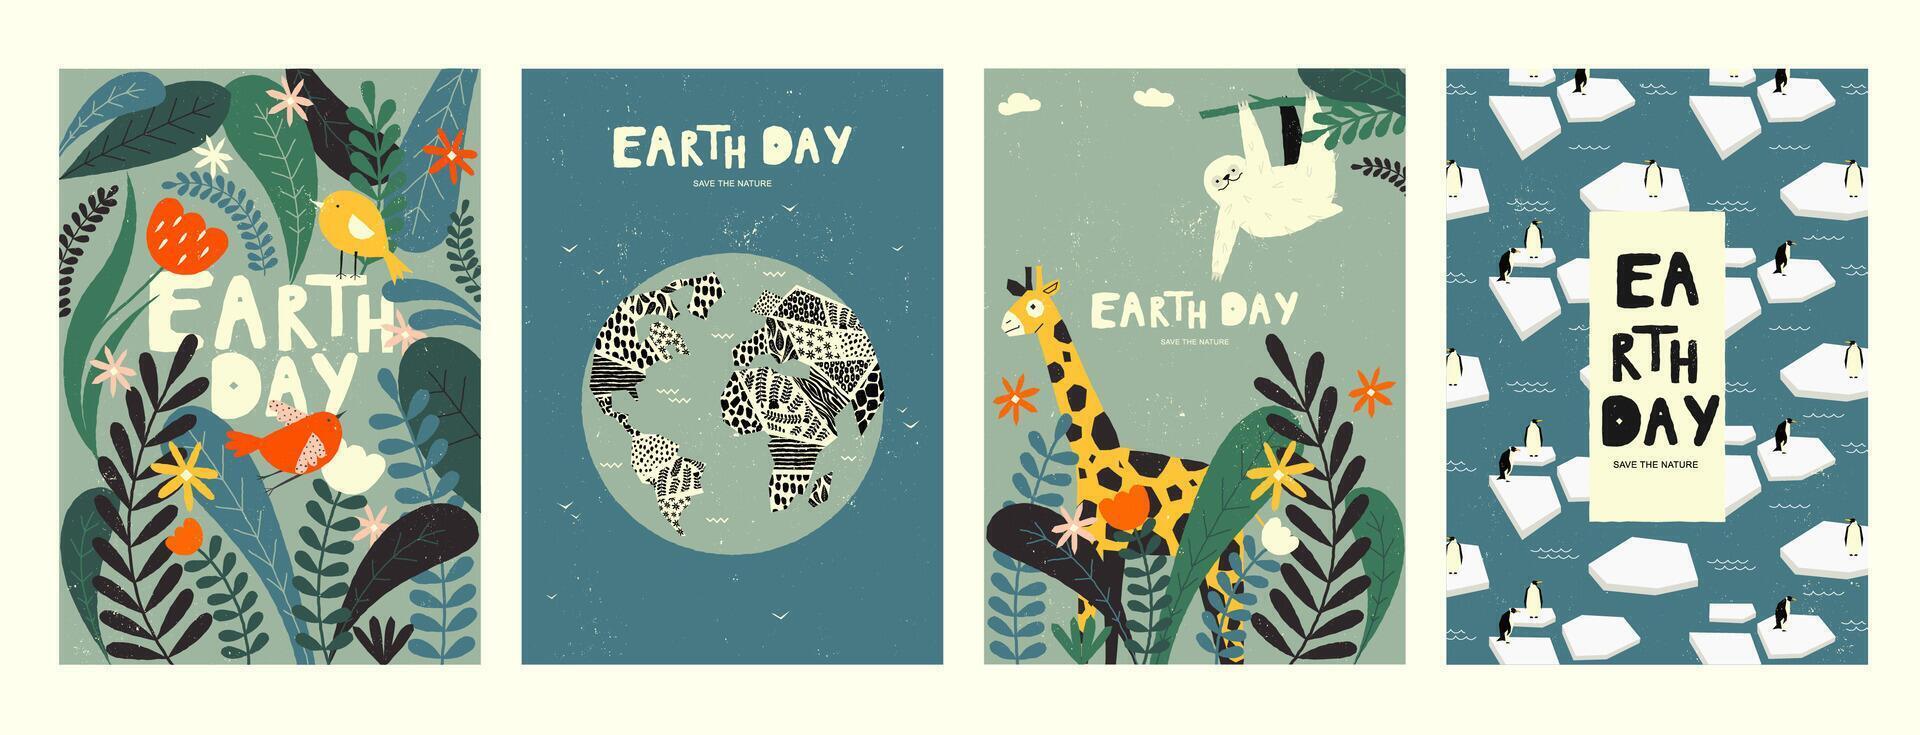 jord miljö- baner. global uppvärmningen begrepp, spara jord planet med återvinna logotyp och händer, ekologi och natur skydd. illustration vektor